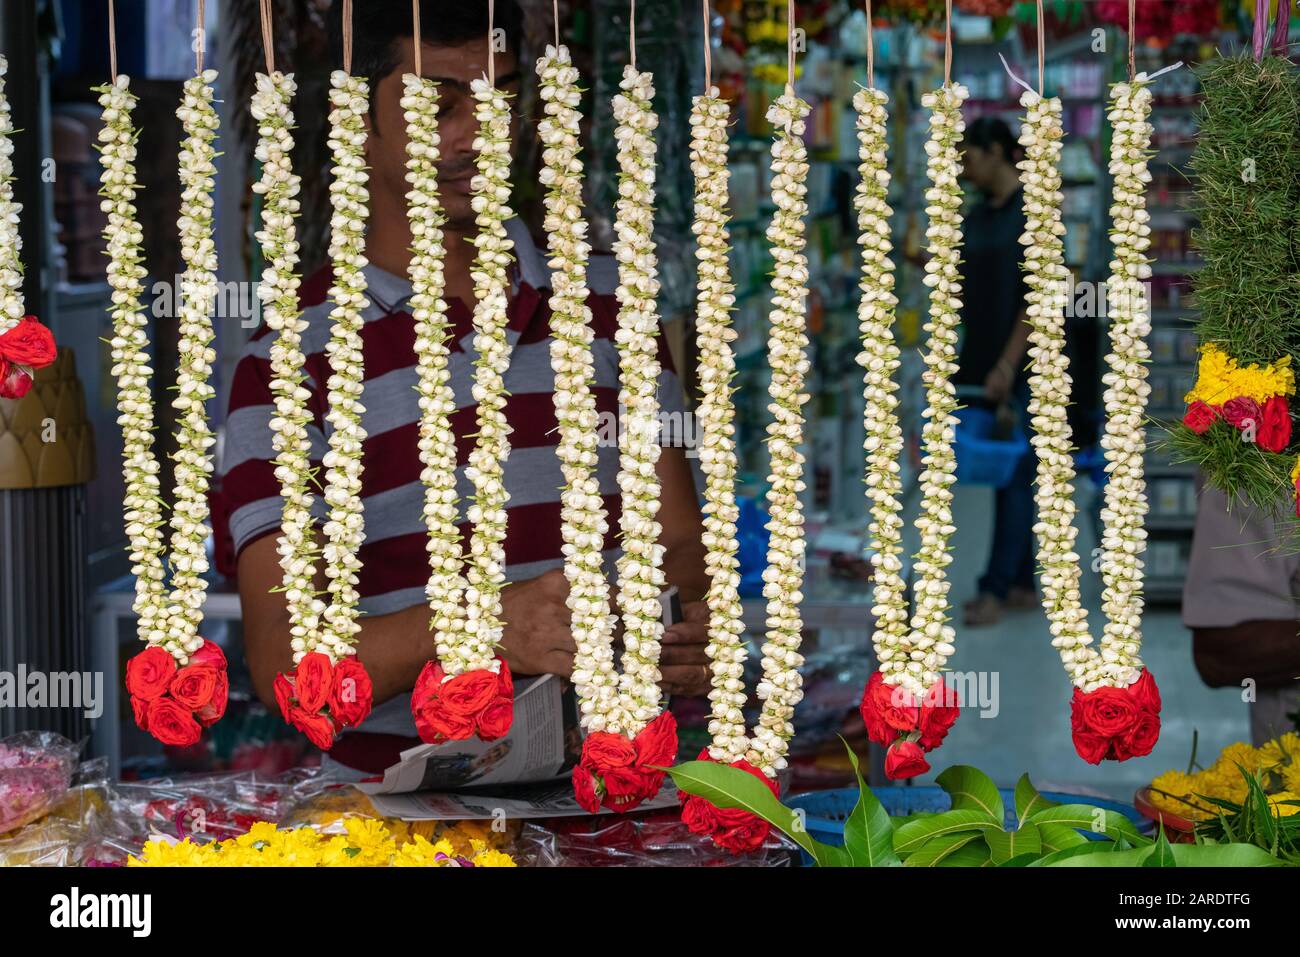 Singapore, Singapore - Gennaio il 22nd, 2020 : stallo dei fiori che vende garlands per l'offerta del tempiale al tempiale Piccolo dell'India Foto Stock